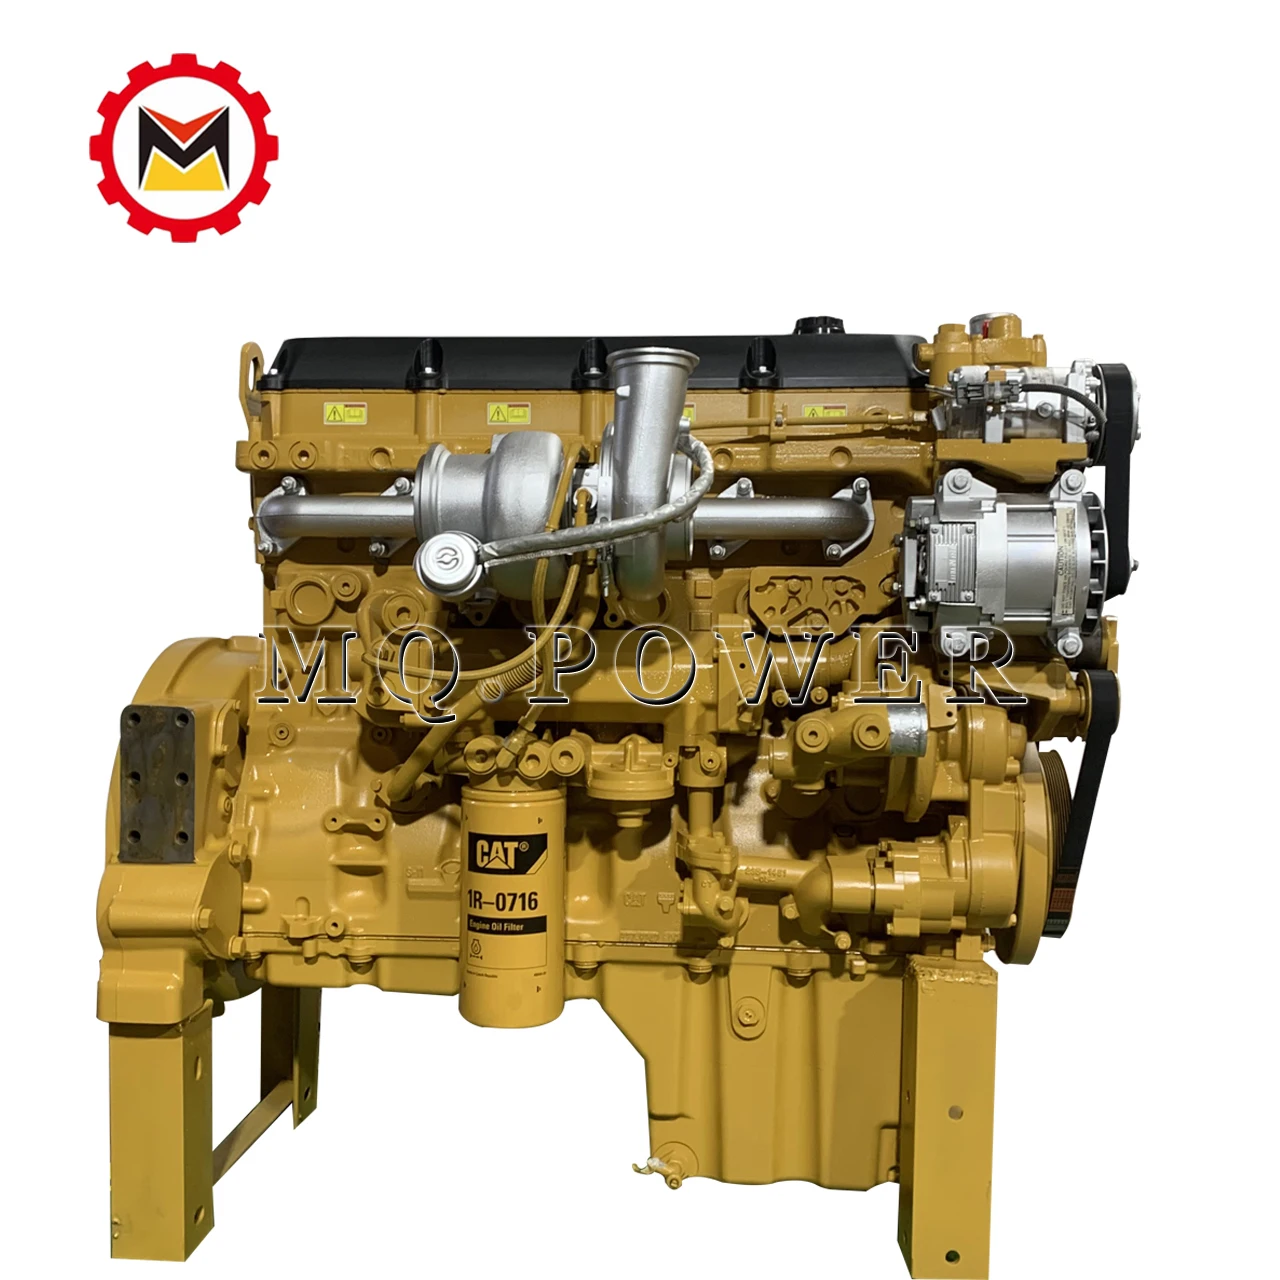 Excavator marine diesel excavator engine  C13 engine assembly 250-7277 remanufactured engine